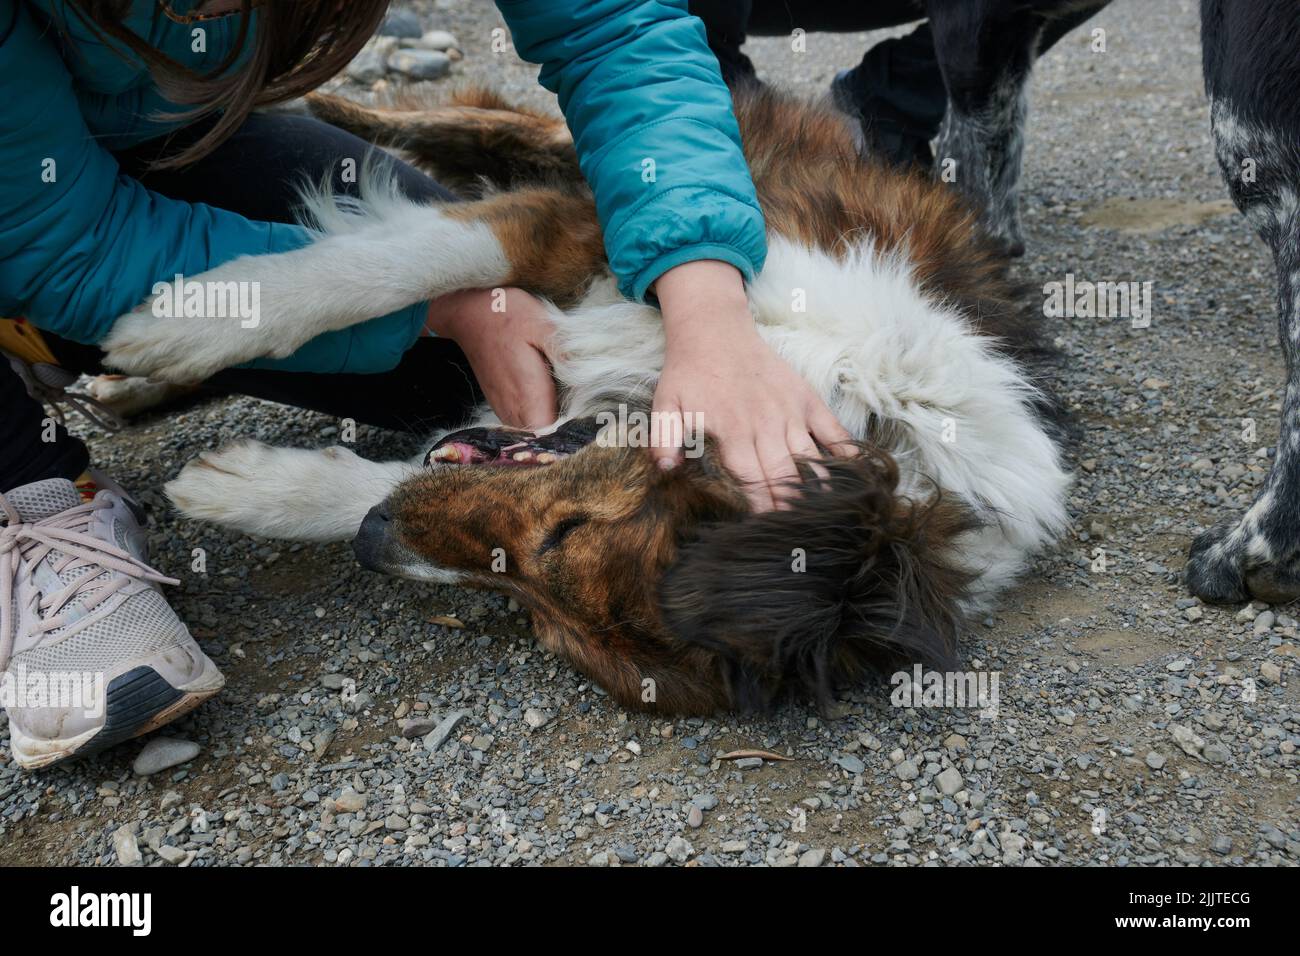 Un homme jouant avec un chien adulte allongé sur le sol dans un abri pour chiens Banque D'Images